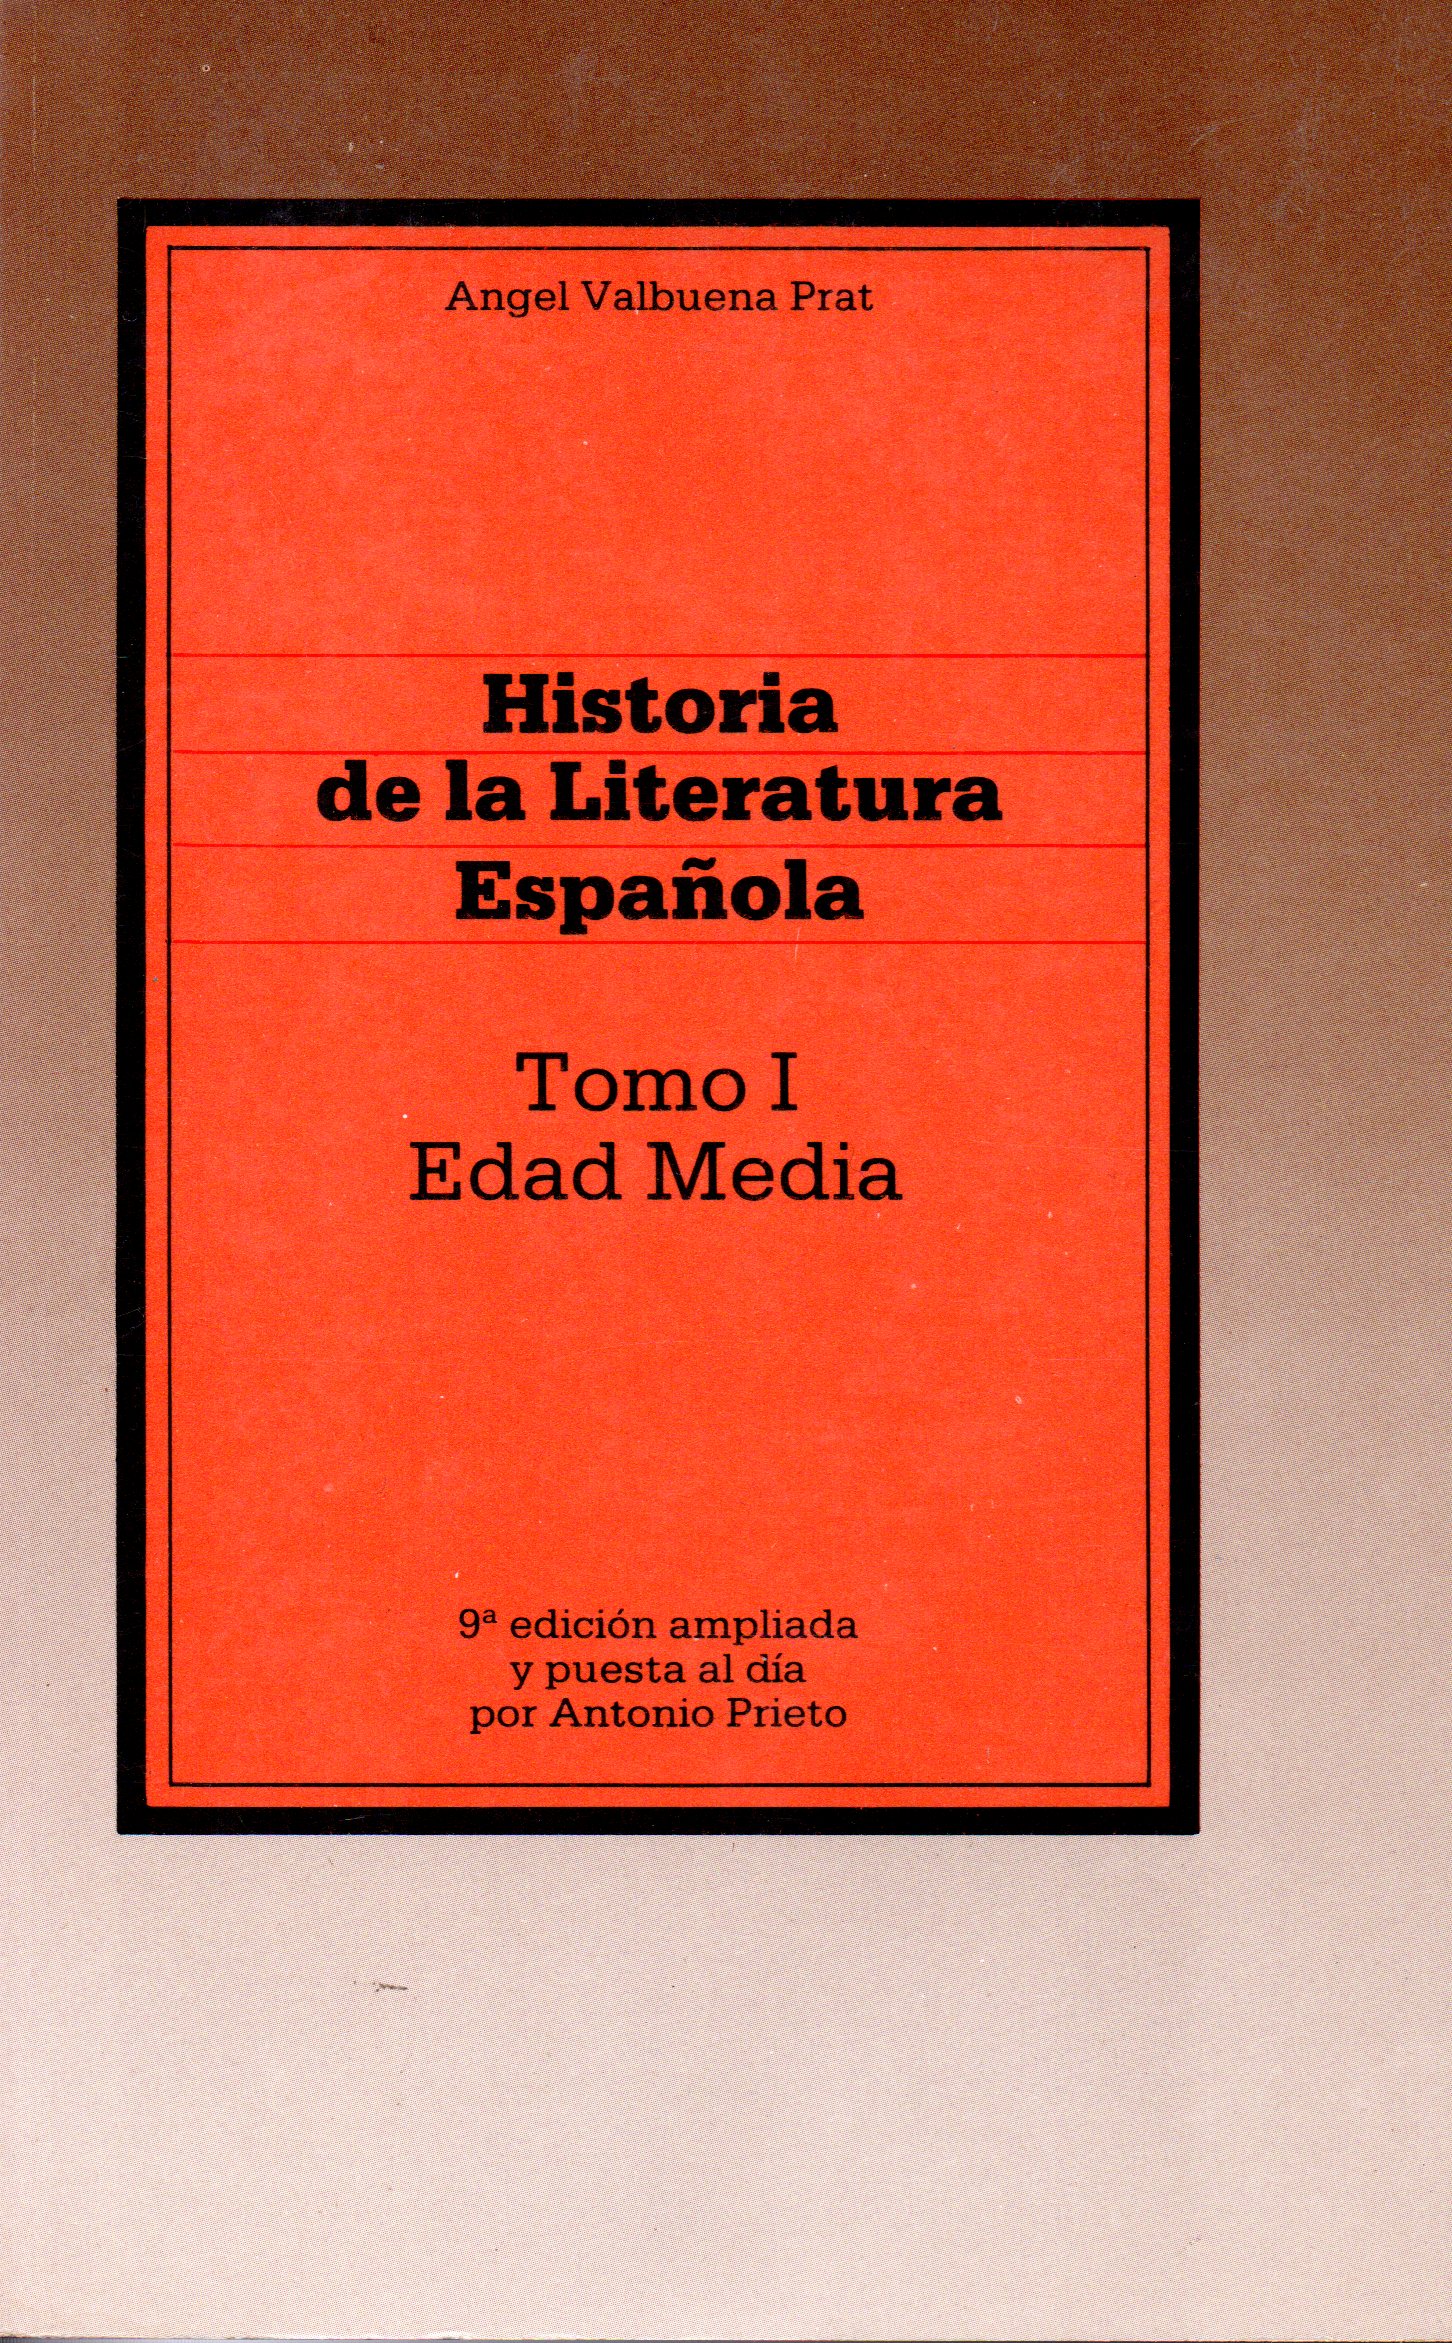 HISTORIA DE LA LITERATURA ESPAÑOLA Tomo I EDAD MEDIA - Ángel Valbuena Prat